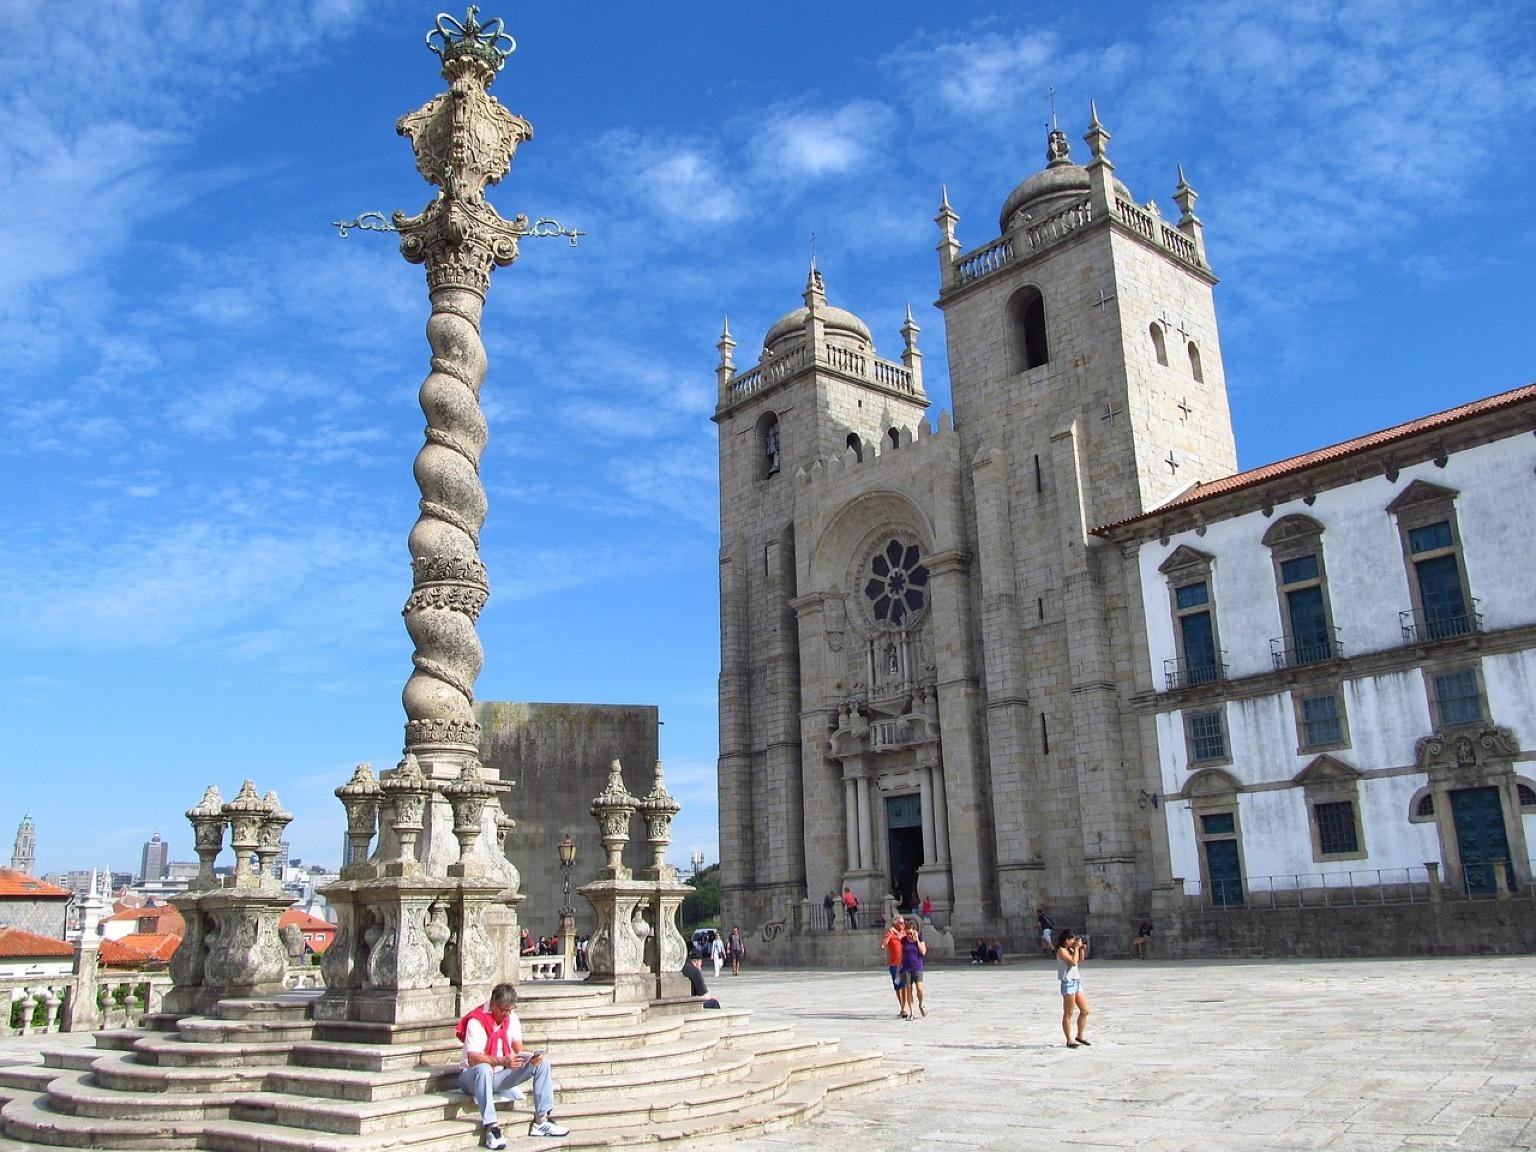 La coexistence harmonieuse de l'histoire et de la beauté à la cathédrale de Porto et au pilori.